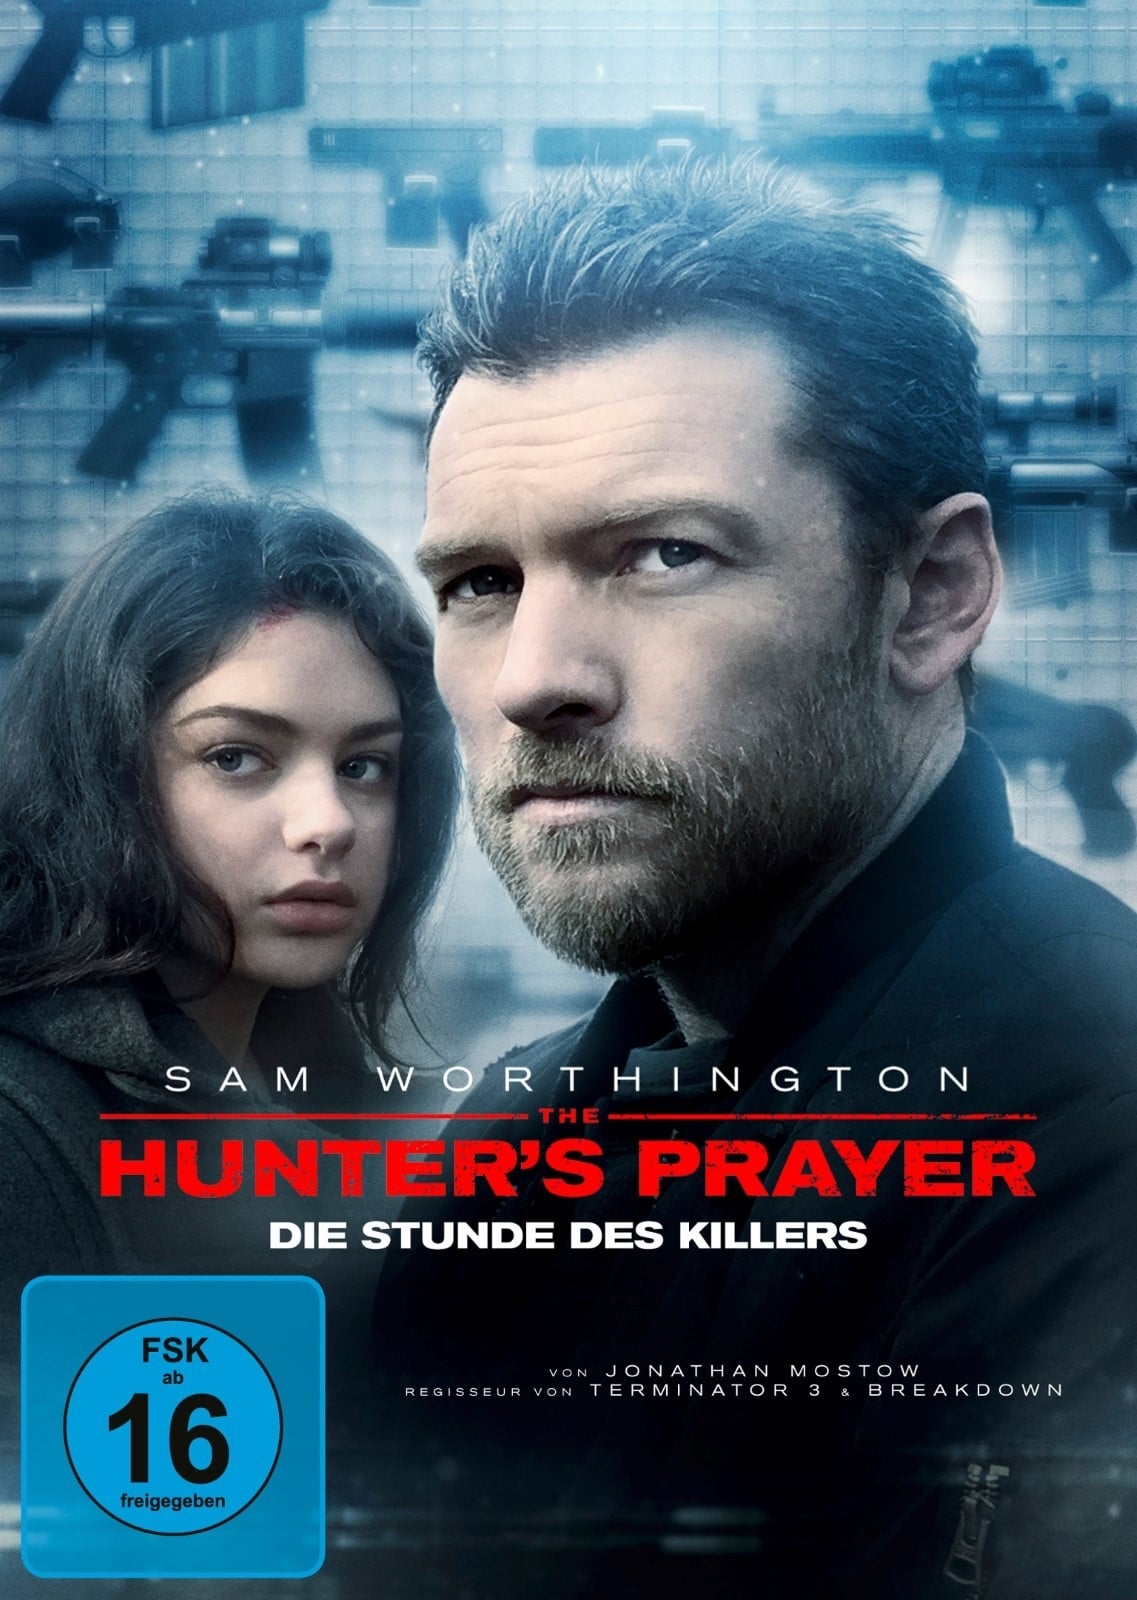 Plakat von "The Hunter's Prayer - Die Stunde des Killers"